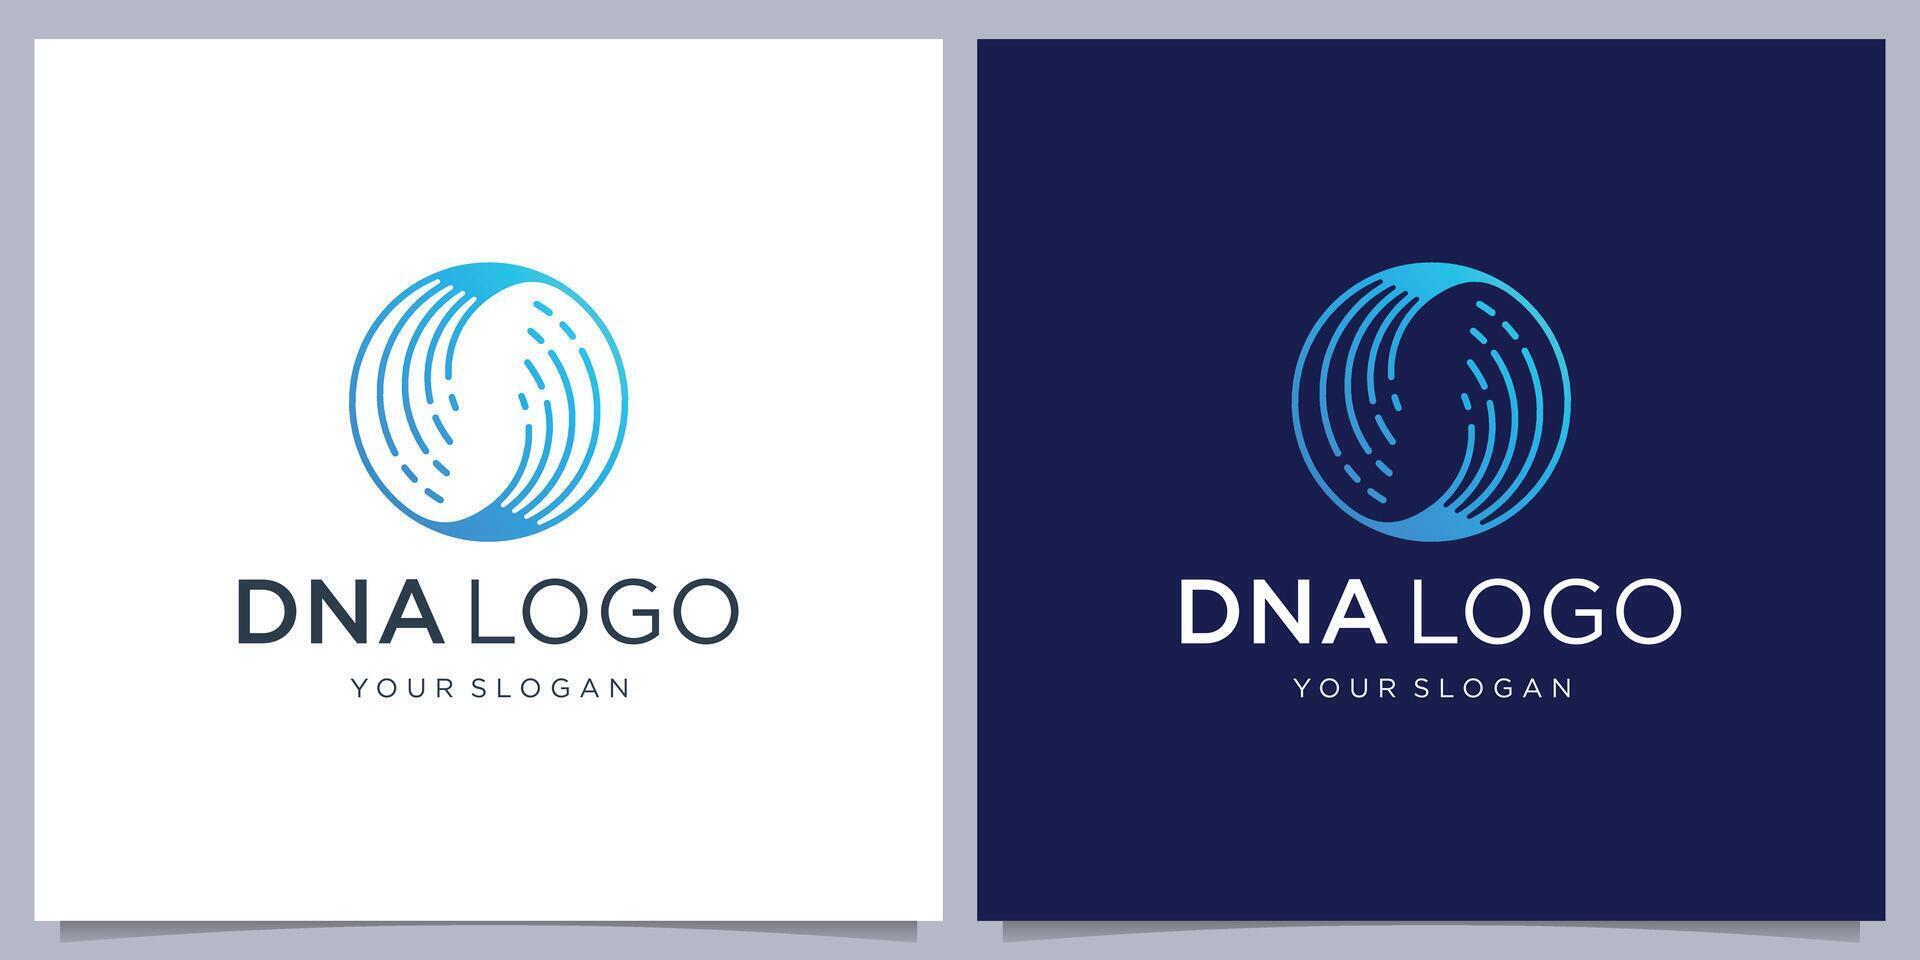 Geometrie kreisförmig DNA Logo Design template.icon zum Wissenschaft Technologie vektor